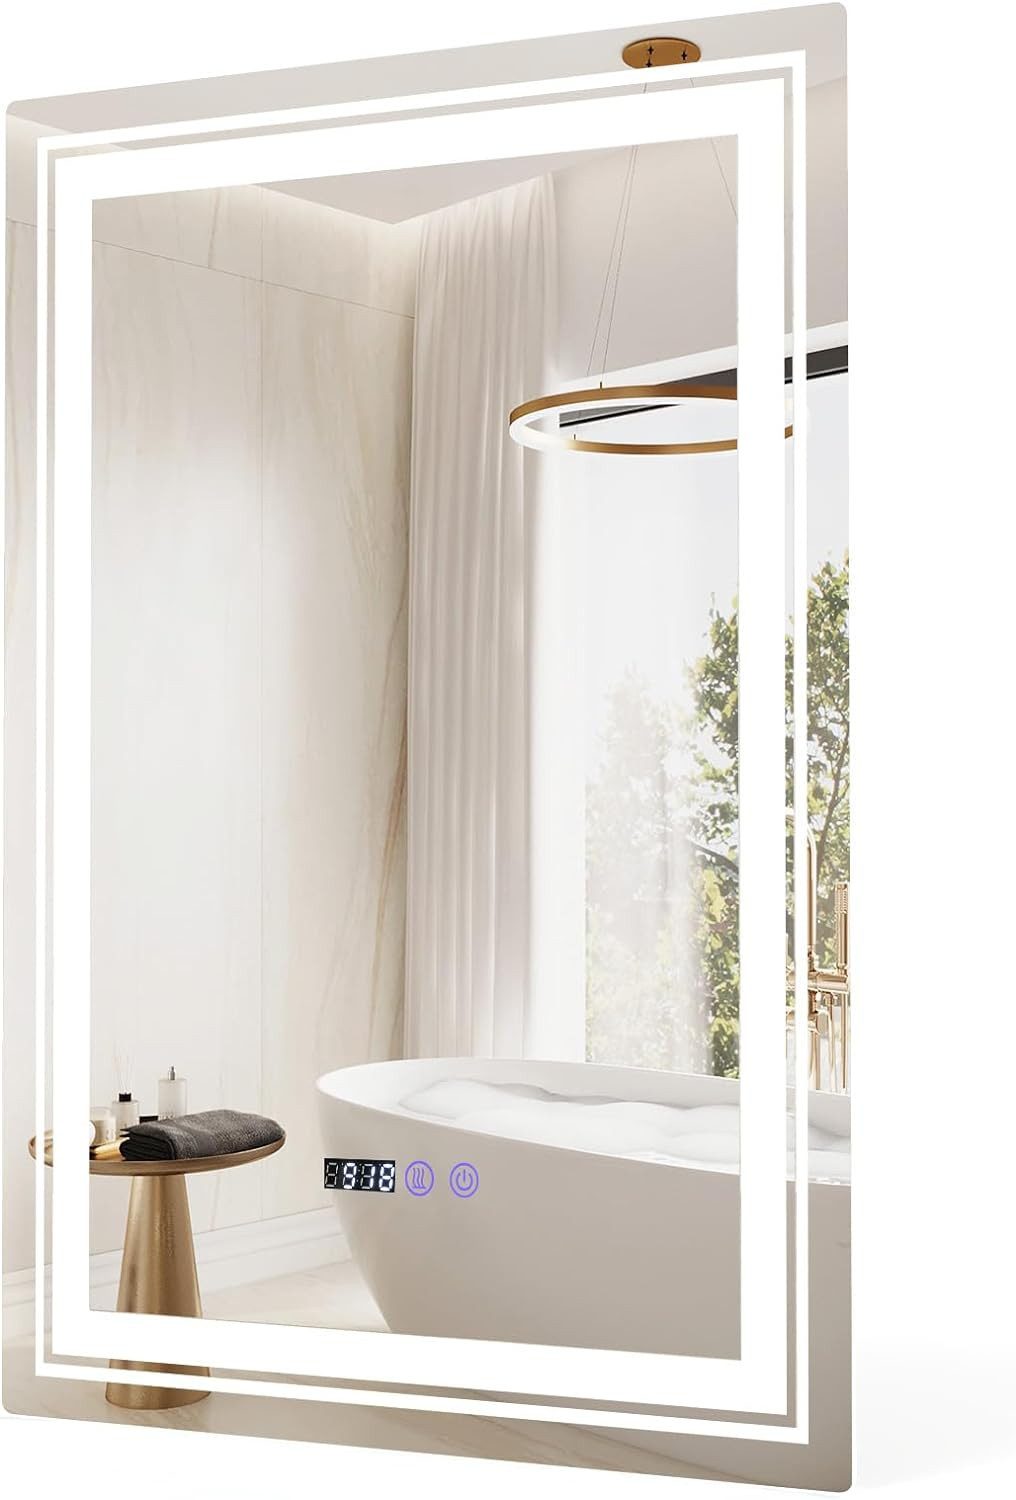 KOMFOTTEU Badspiegel, mit 3 Lichtfarben & Beschlagfrei, Uhr & Temperatur